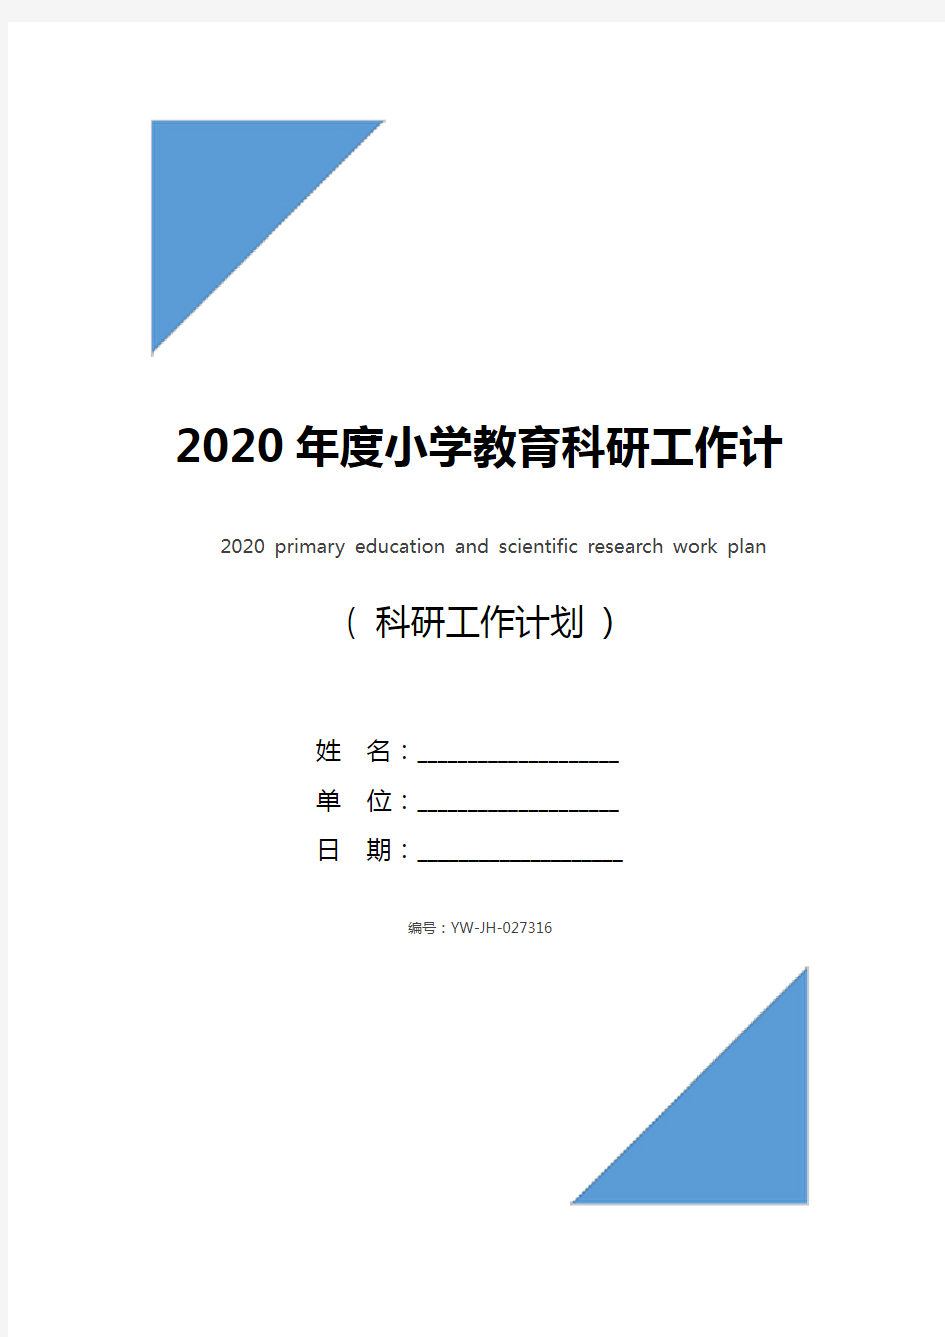 2020年度小学教育科研工作计划